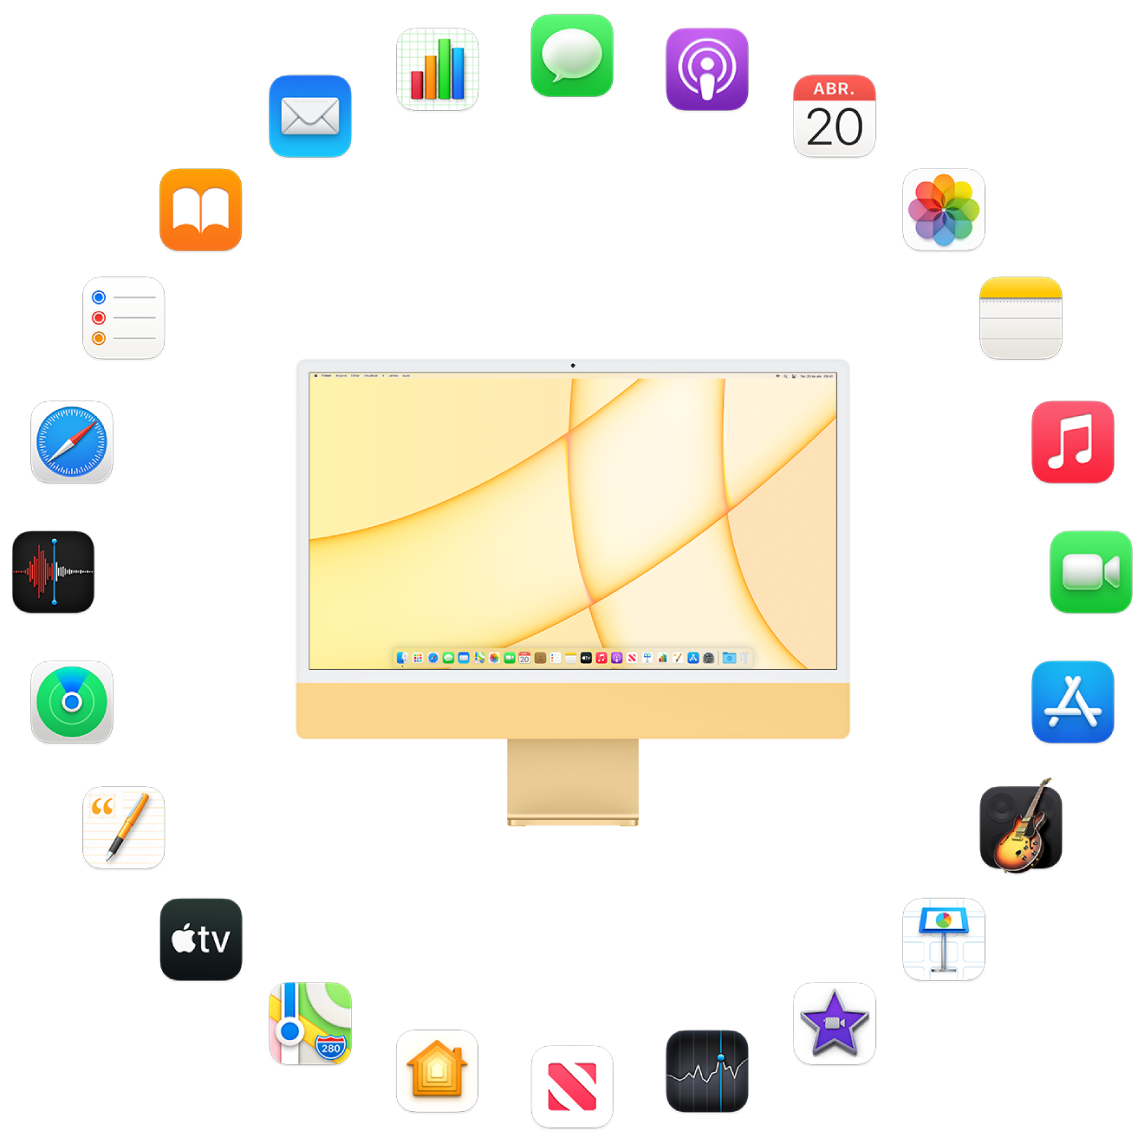 iMac rodeado pelos ícones dos apps que vêm instalados e que são descritos nas seções a seguir.